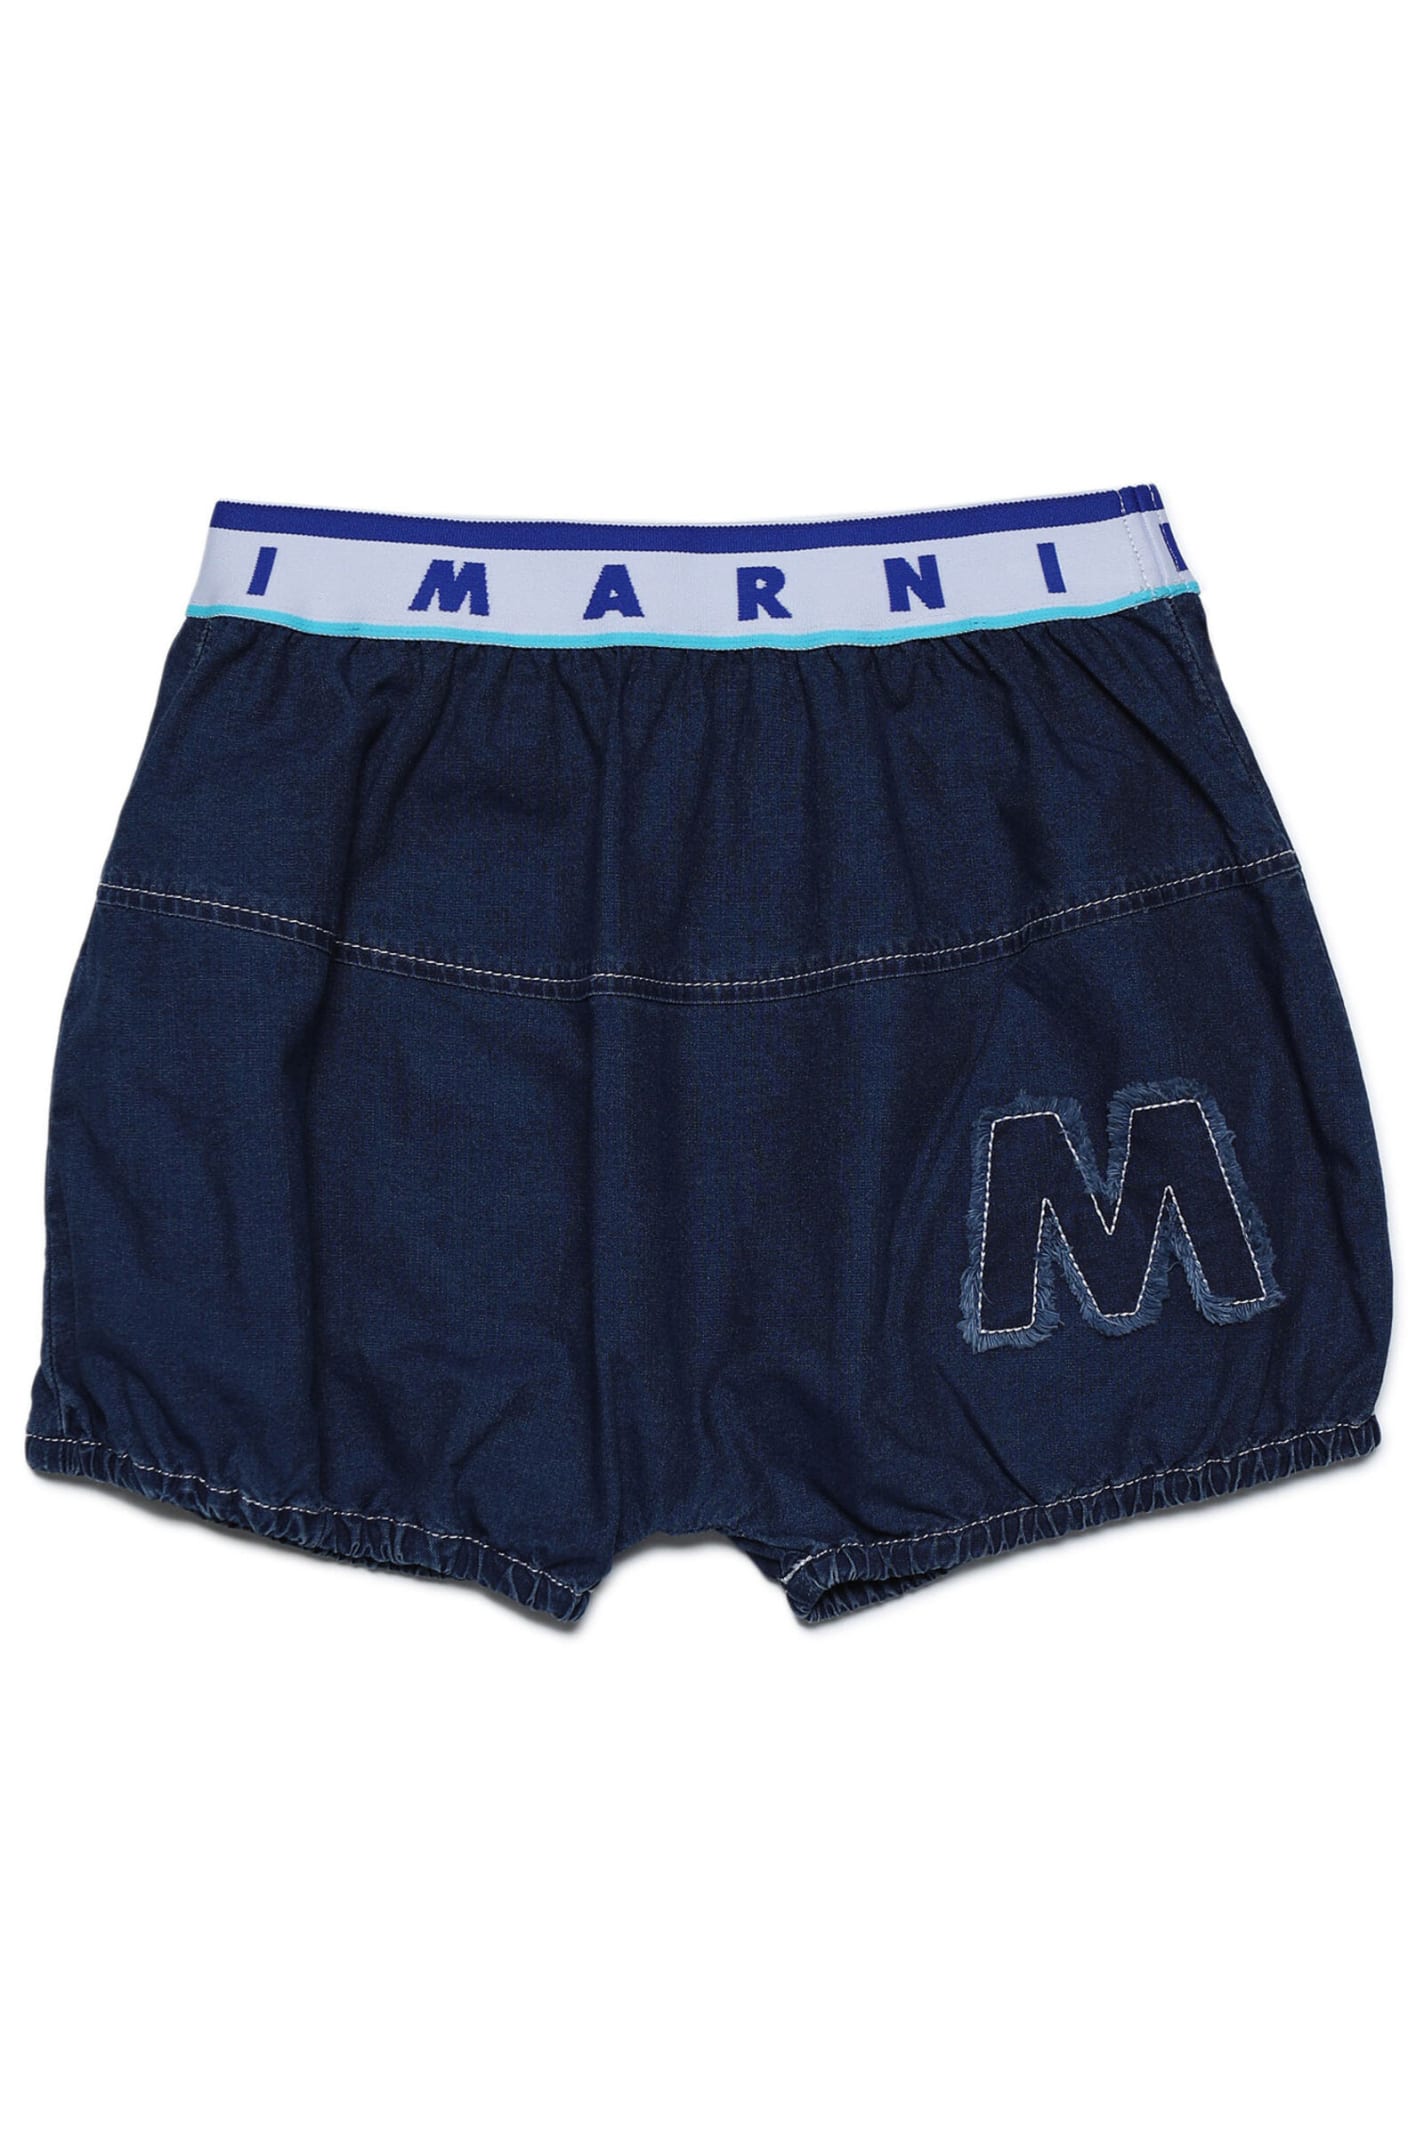 Mp94f Shorts Marni